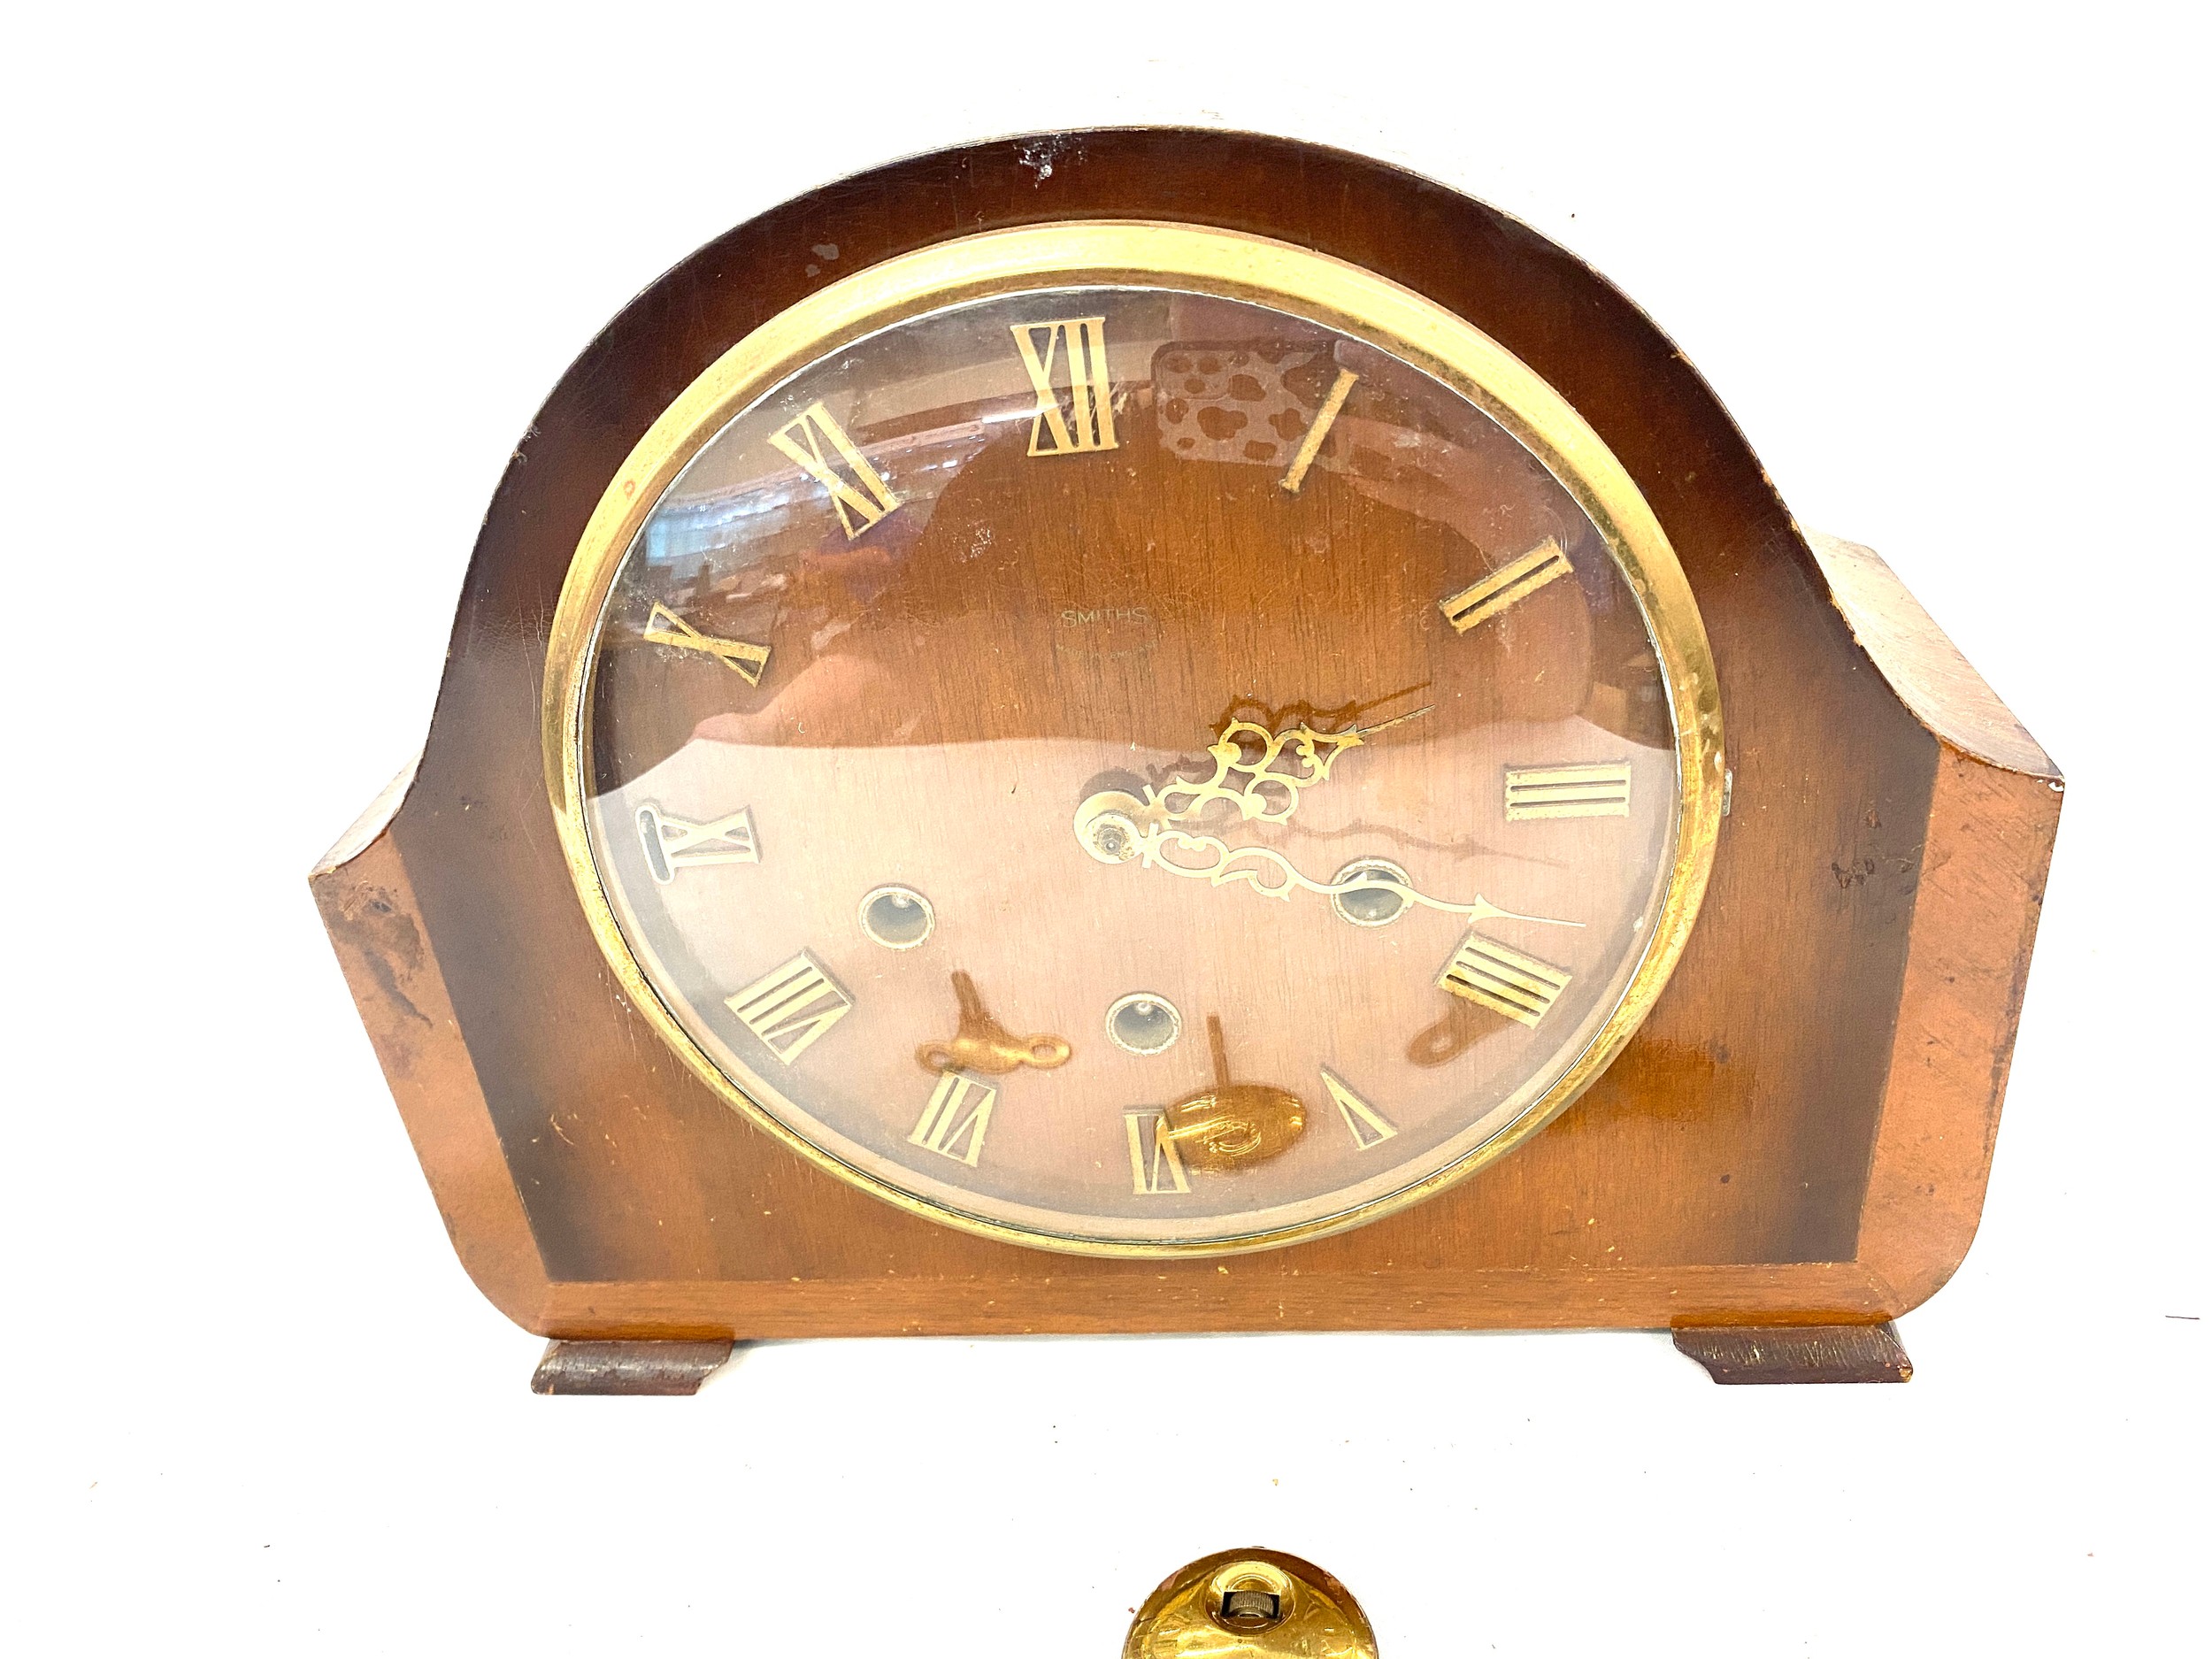 Smiths 3 Key hole mantle clock, with key and pendulum , untested - Image 3 of 4